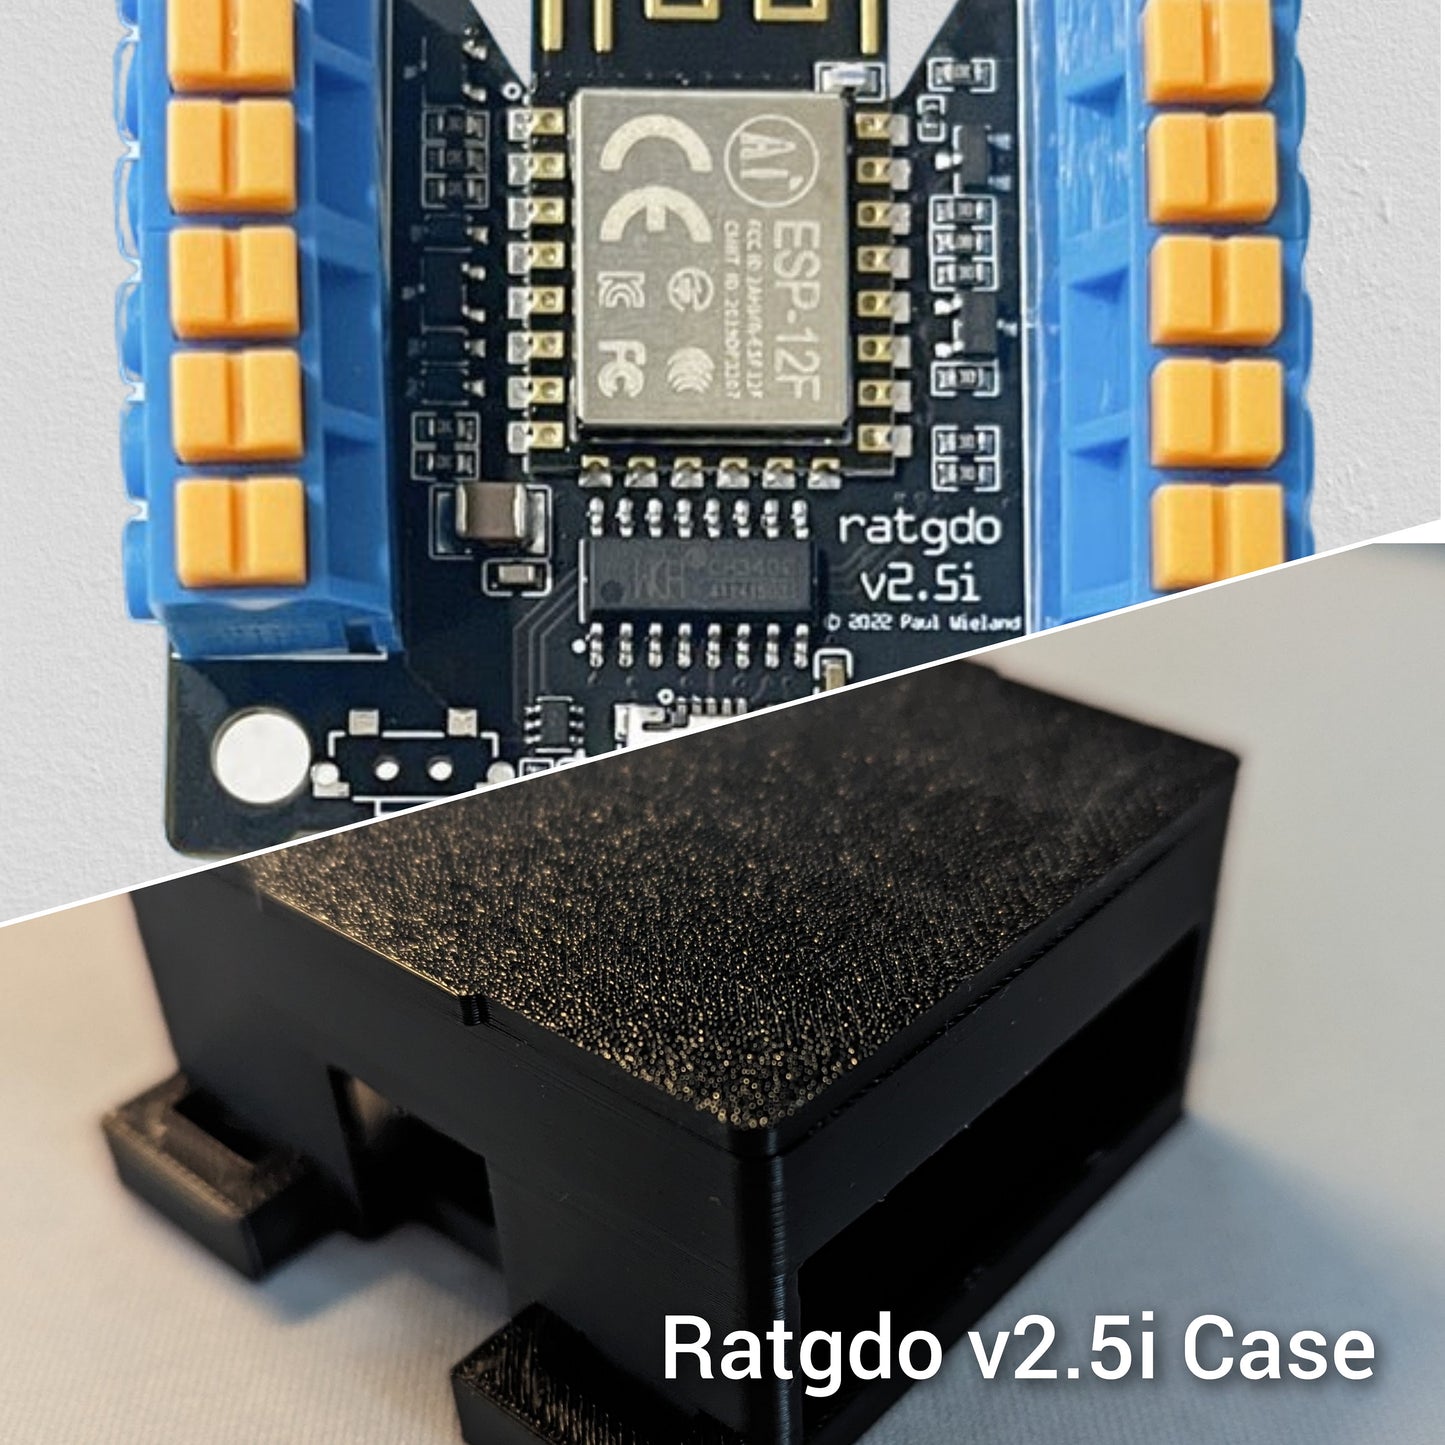 Ratgdo v2.5i  PCB Case Tooless Enclosure - Ratgdo Case for MyQ Alternative Esphome/Mqtt Board